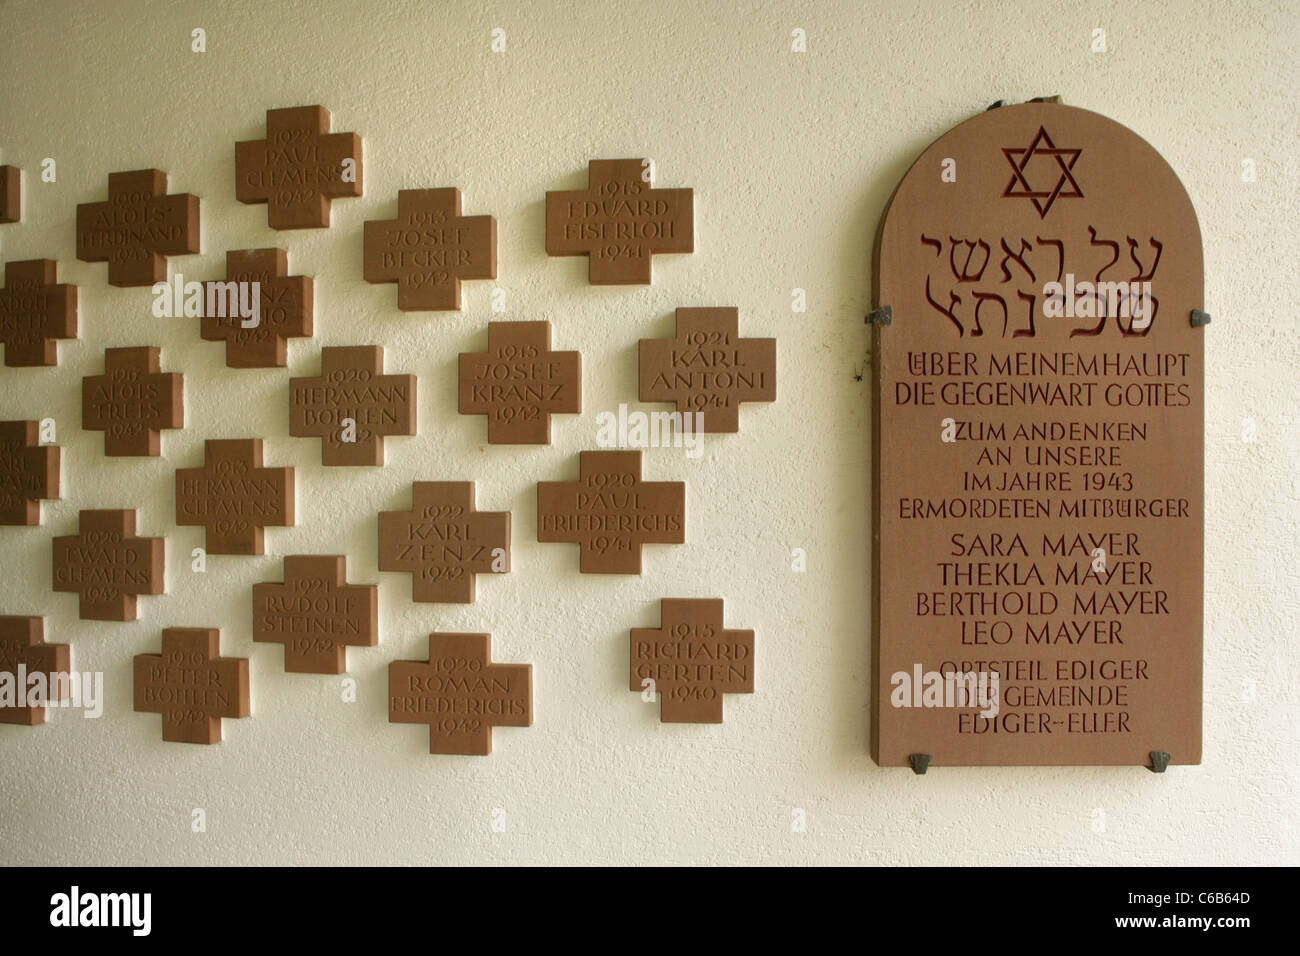 Gedenksteine für Juden ermordet und Soldaten getötet im 2. Weltkrieg, Ediger-Eller, Deutschland. Stockfoto